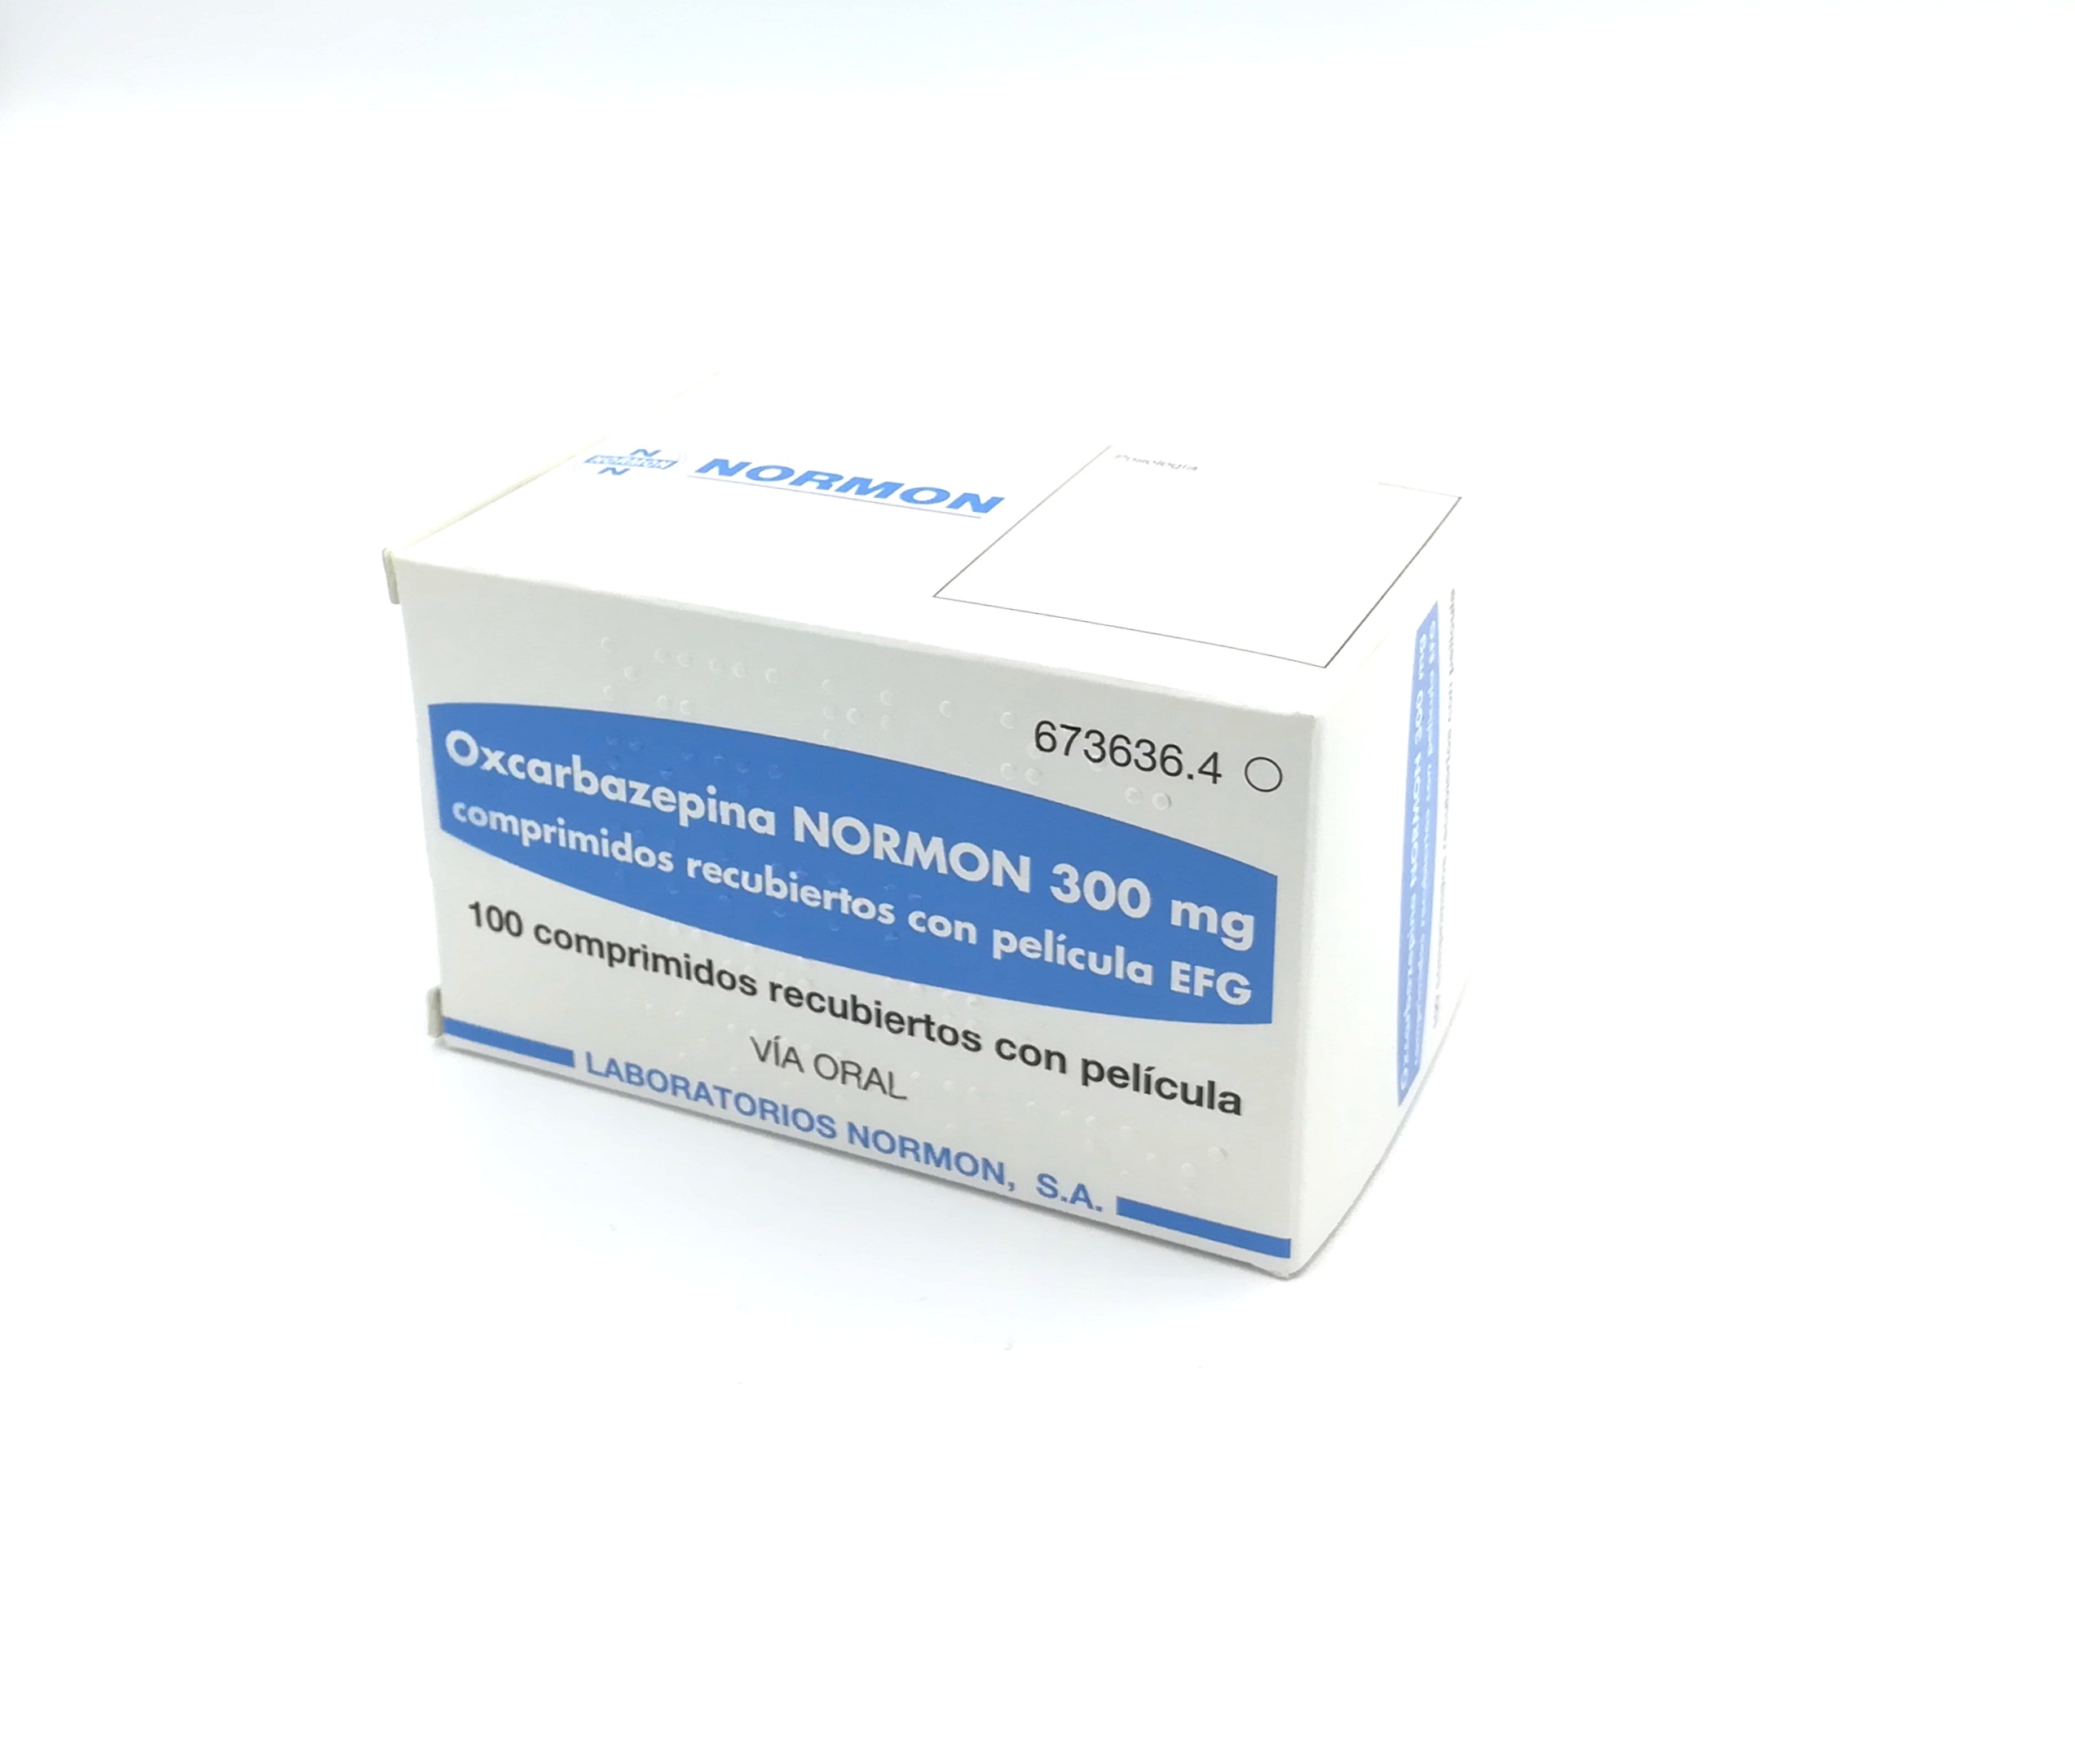 OXCARBAZEPINA NORMON EFG 300 mg 500 COMPRIMIDOS RECUBIERTOS